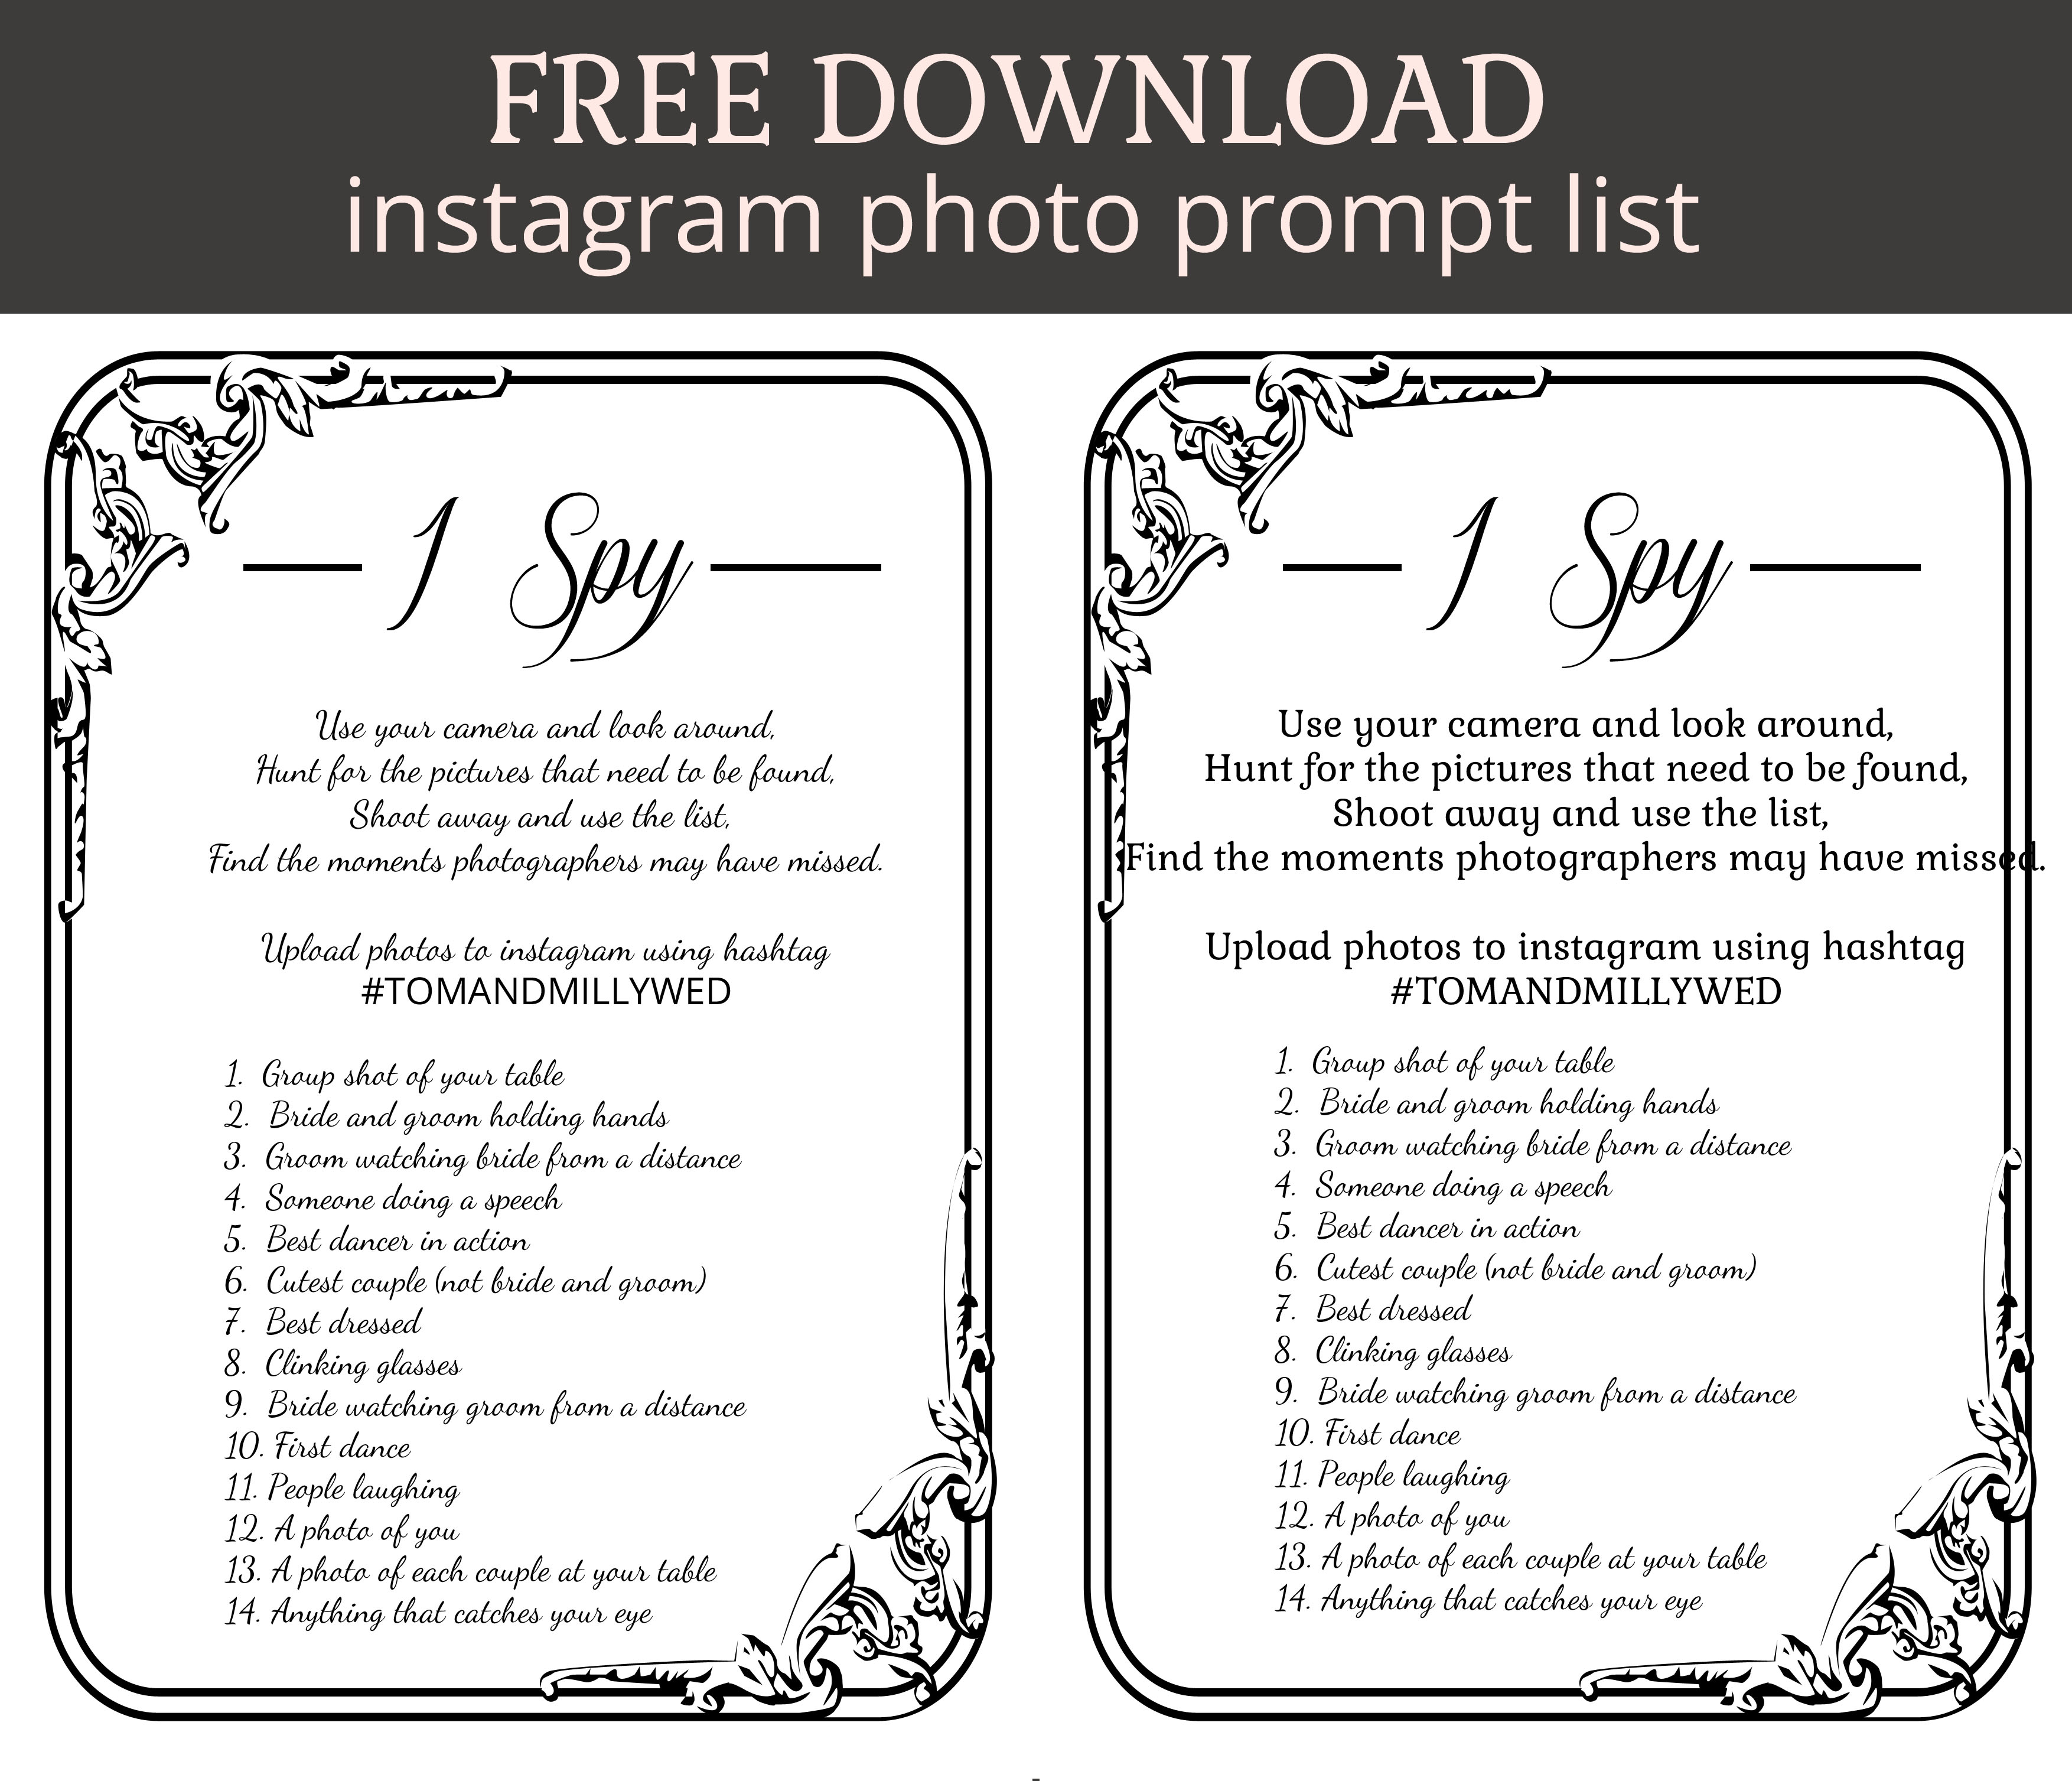 i spy prompt sheet for instagram wedding photo uploads - FREE DOWNLOAD